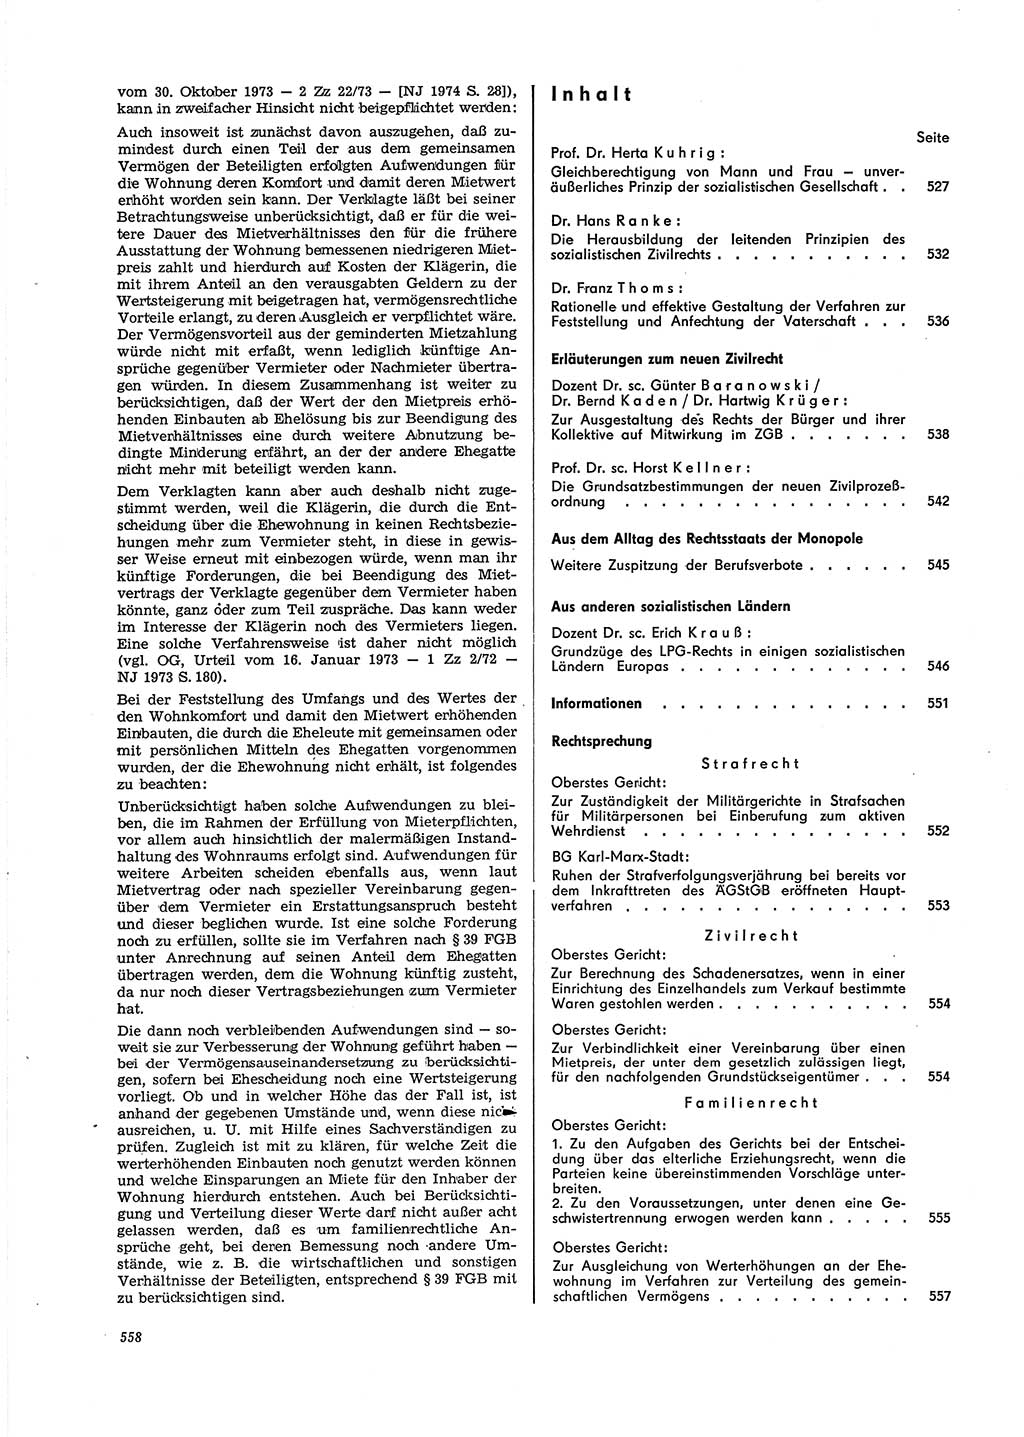 Neue Justiz (NJ), Zeitschrift für Recht und Rechtswissenschaft [Deutsche Demokratische Republik (DDR)], 29. Jahrgang 1975, Seite 558 (NJ DDR 1975, S. 558)